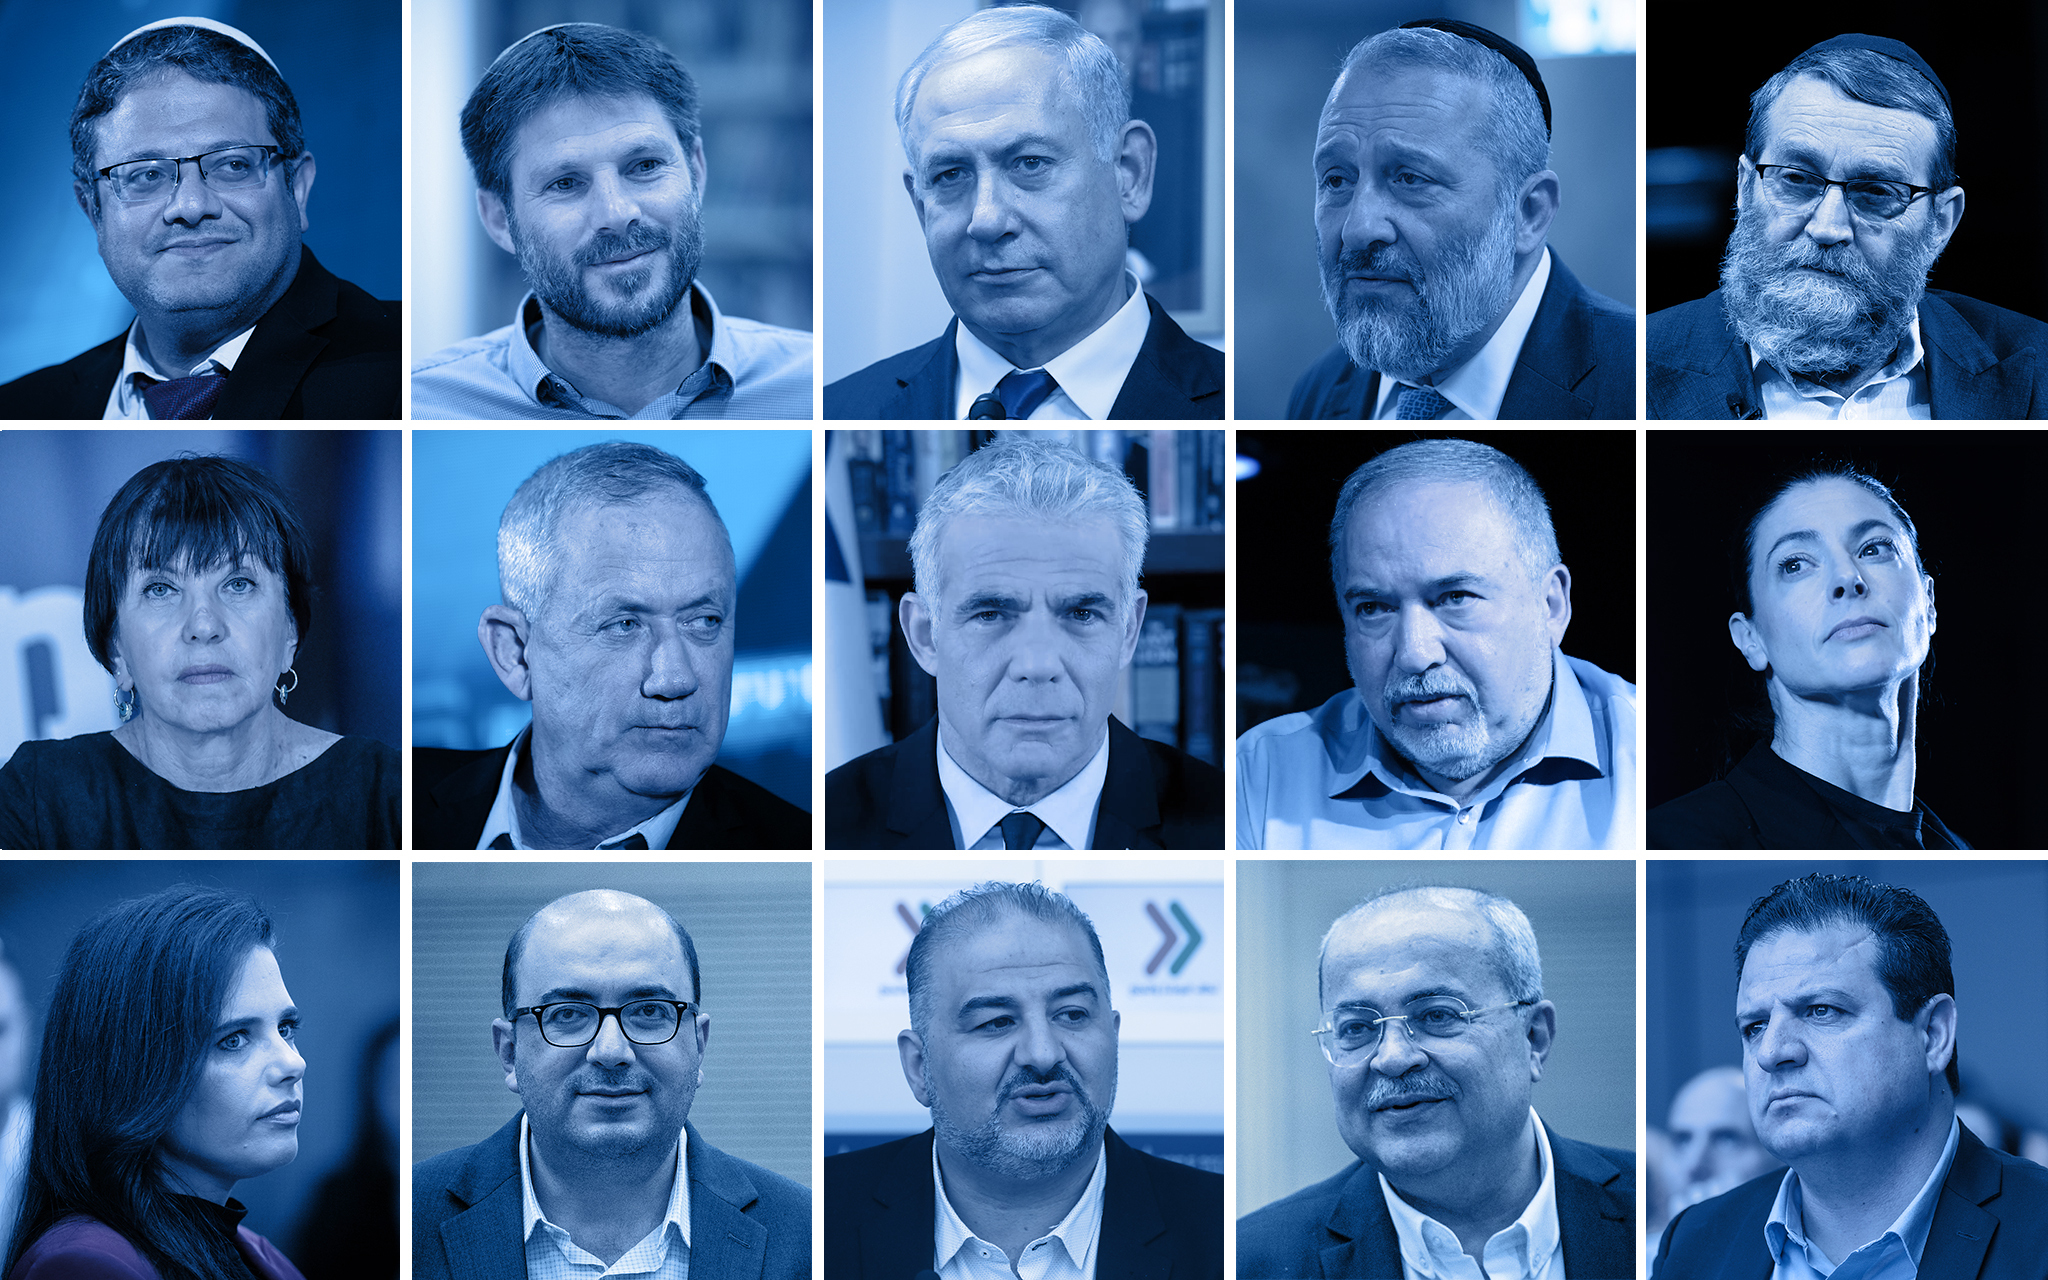 Les politiciens israéliens les plus éminents avant les élections de la 25è Knesset : en haut et de gauche à droite :  Itamar Ben Gvir, Bezalel Smotrich, Benjamin Netanyahu, Aryeh Deri, Moshe Gafni; au milieu et de gauche à droite : Zehava Galon, Benny Gantz, Yair Lapid, Avigdor Liberman, Merav Michaeli; en bas et de gauche à droite : Ayelet Shaked, Sami Abou Shahadeh, Mansour Abbas, Ahmad Tibi, Ayman Odeh. (Crédit : Flash90, GPO)